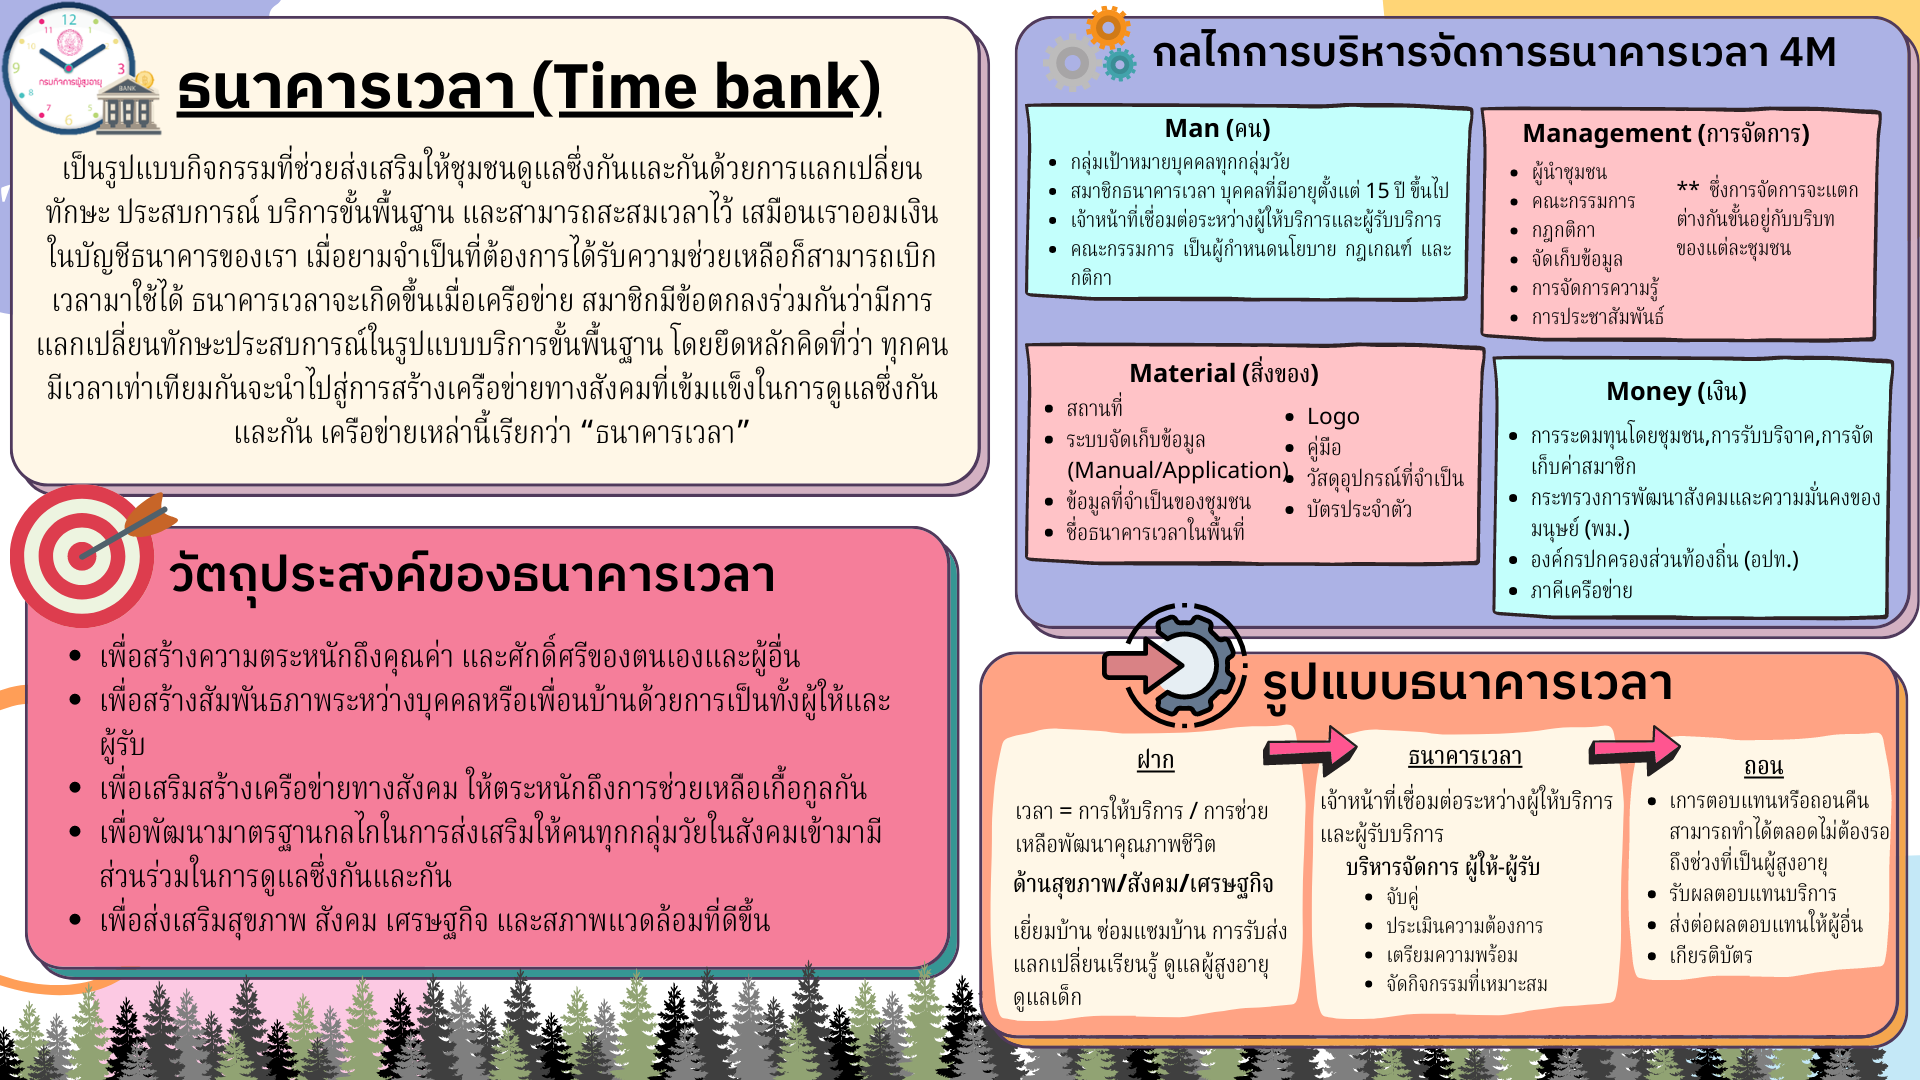 ธนาคารเวลา (Time bank)